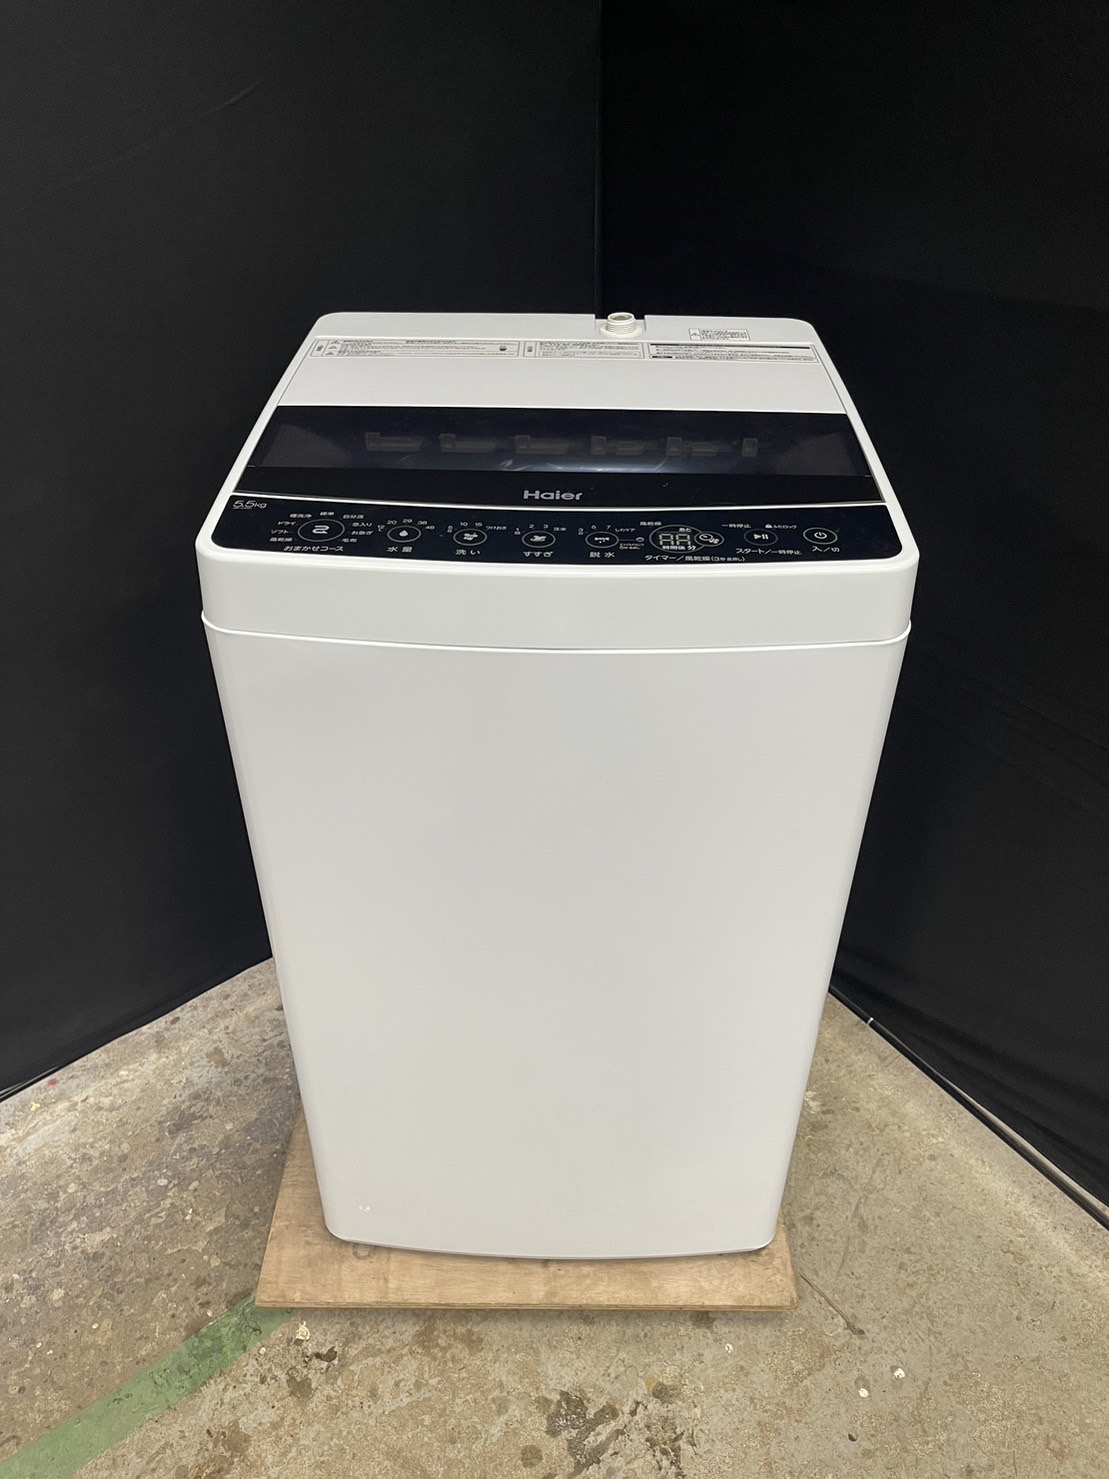 ハイアール 5.5㎏ 単身用洗濯機 JW-C55D 2021年製 新生活 激安家電